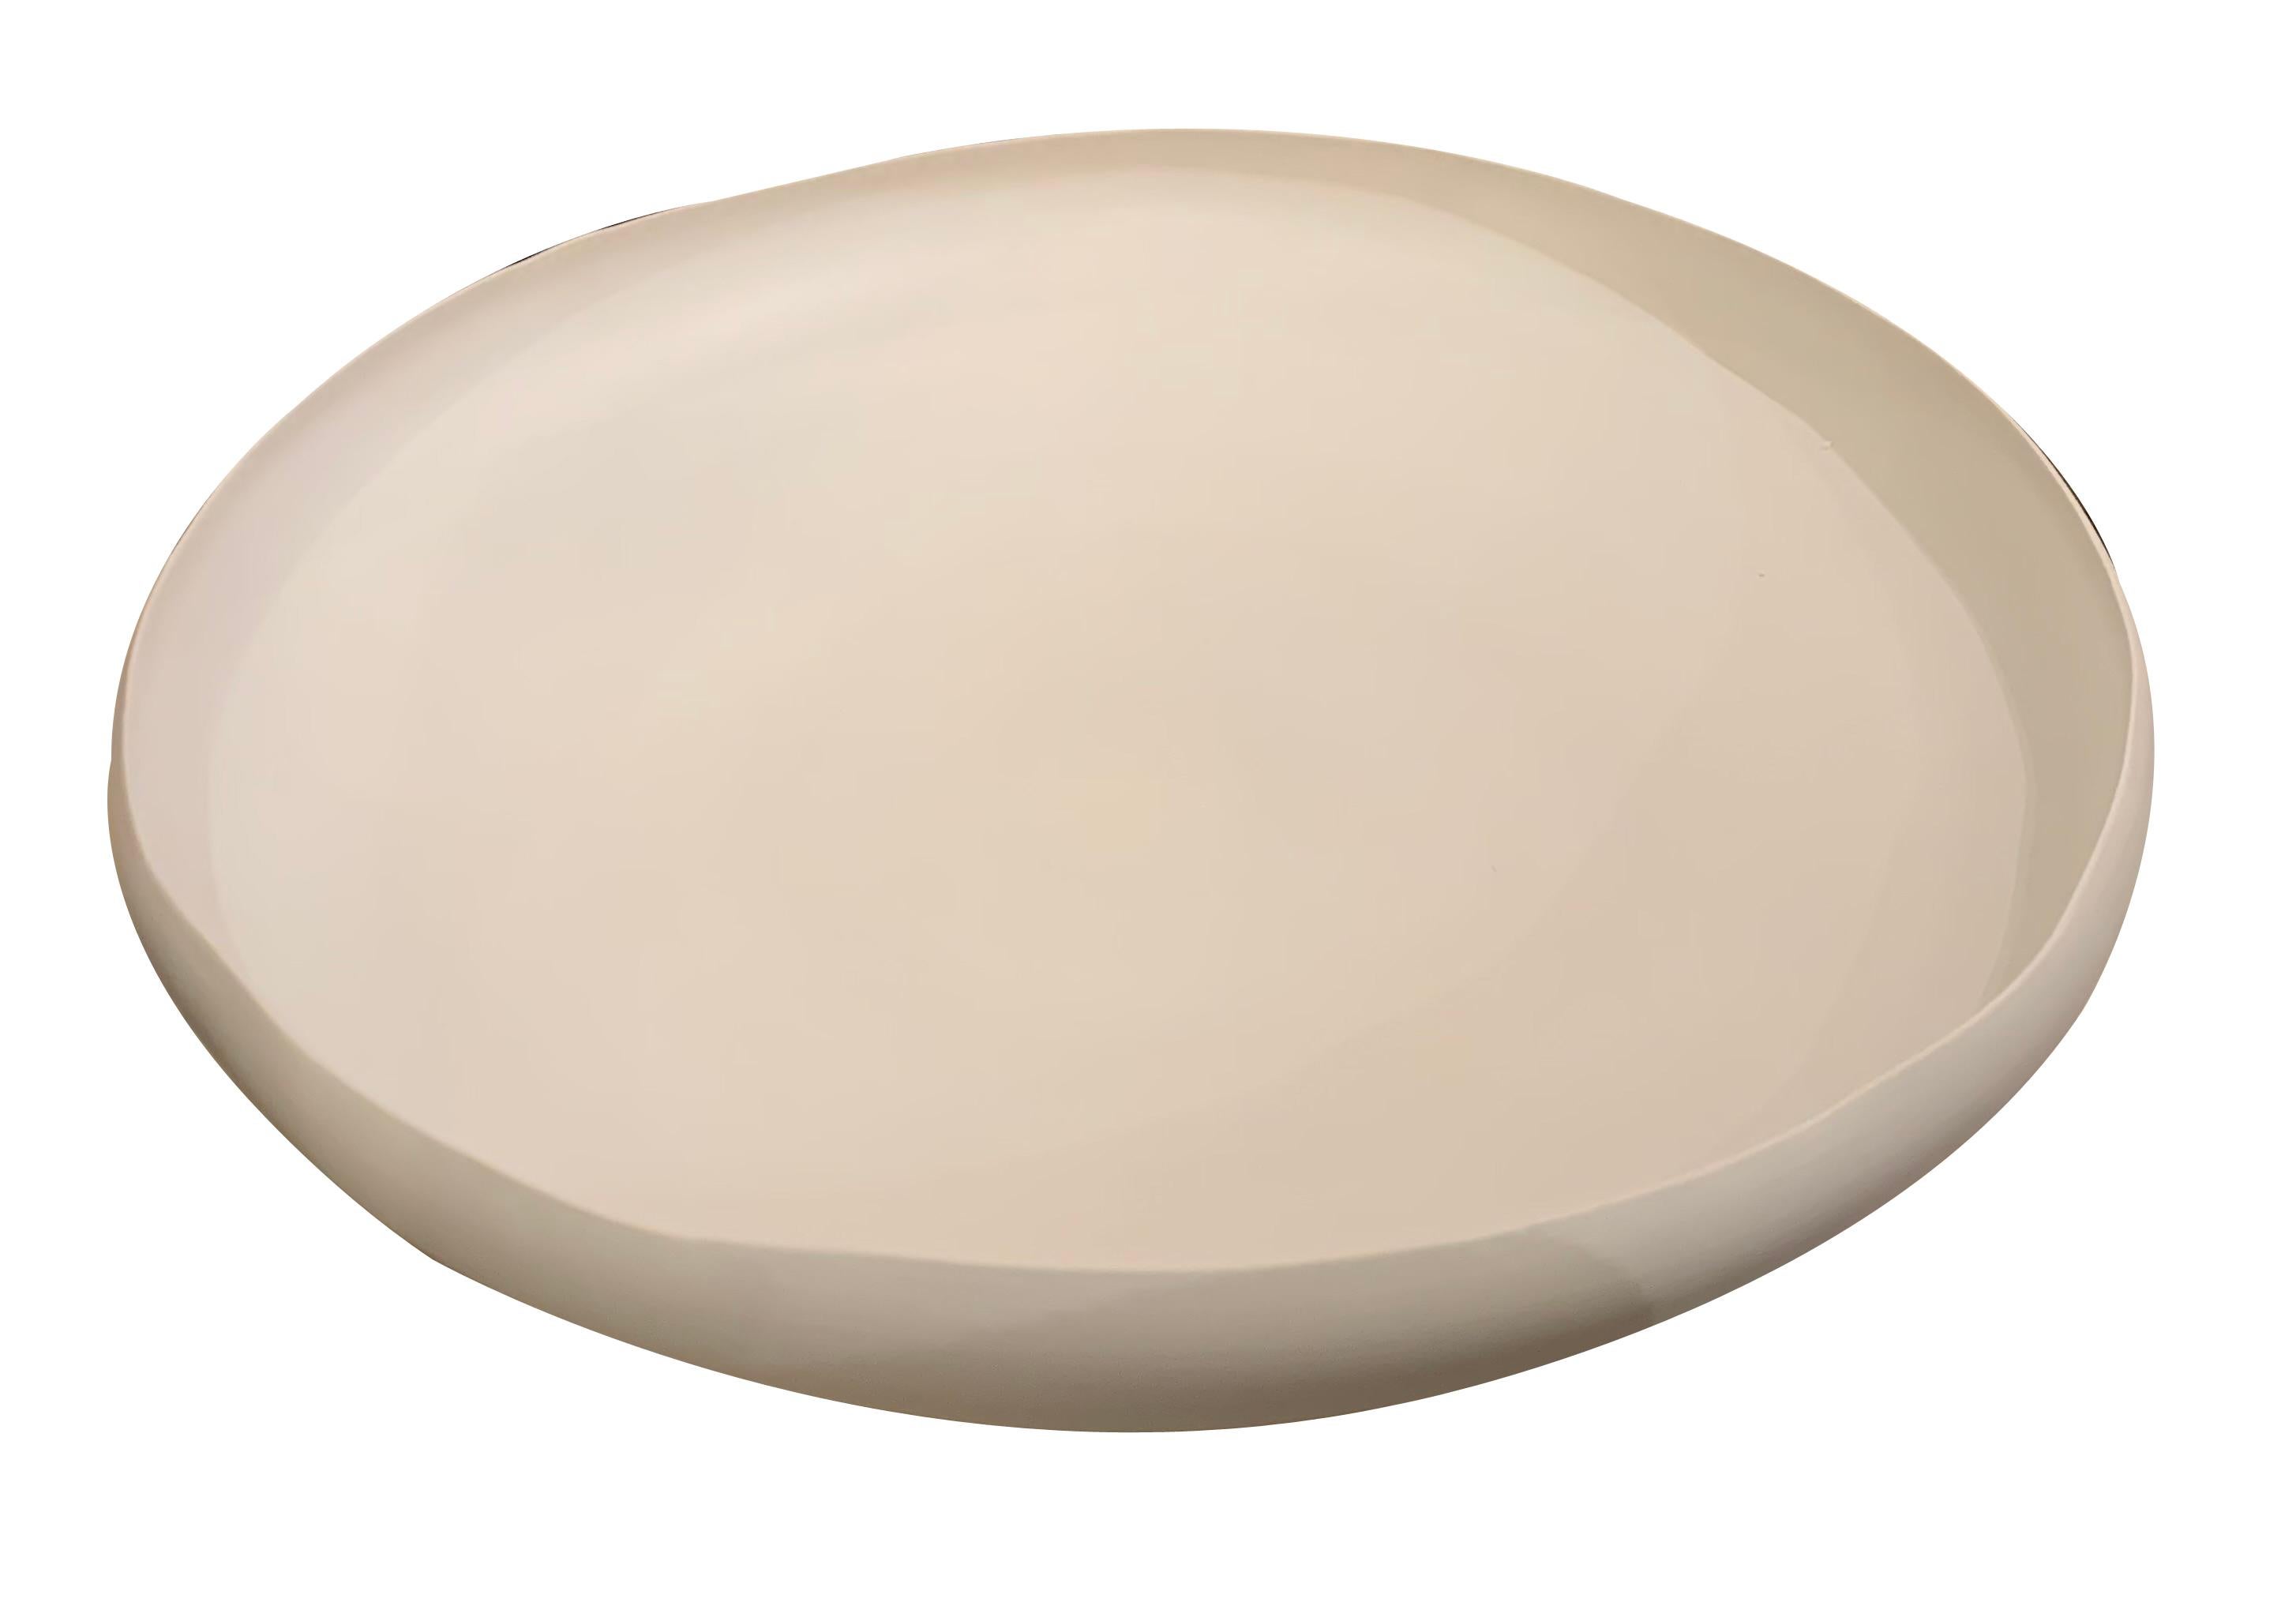 Zeitgenössische italienische Schale aus feiner Keramik mit leicht geschwungenen Rändern.
Leinen in Farbe.
Auch in Weiß erhältlich.